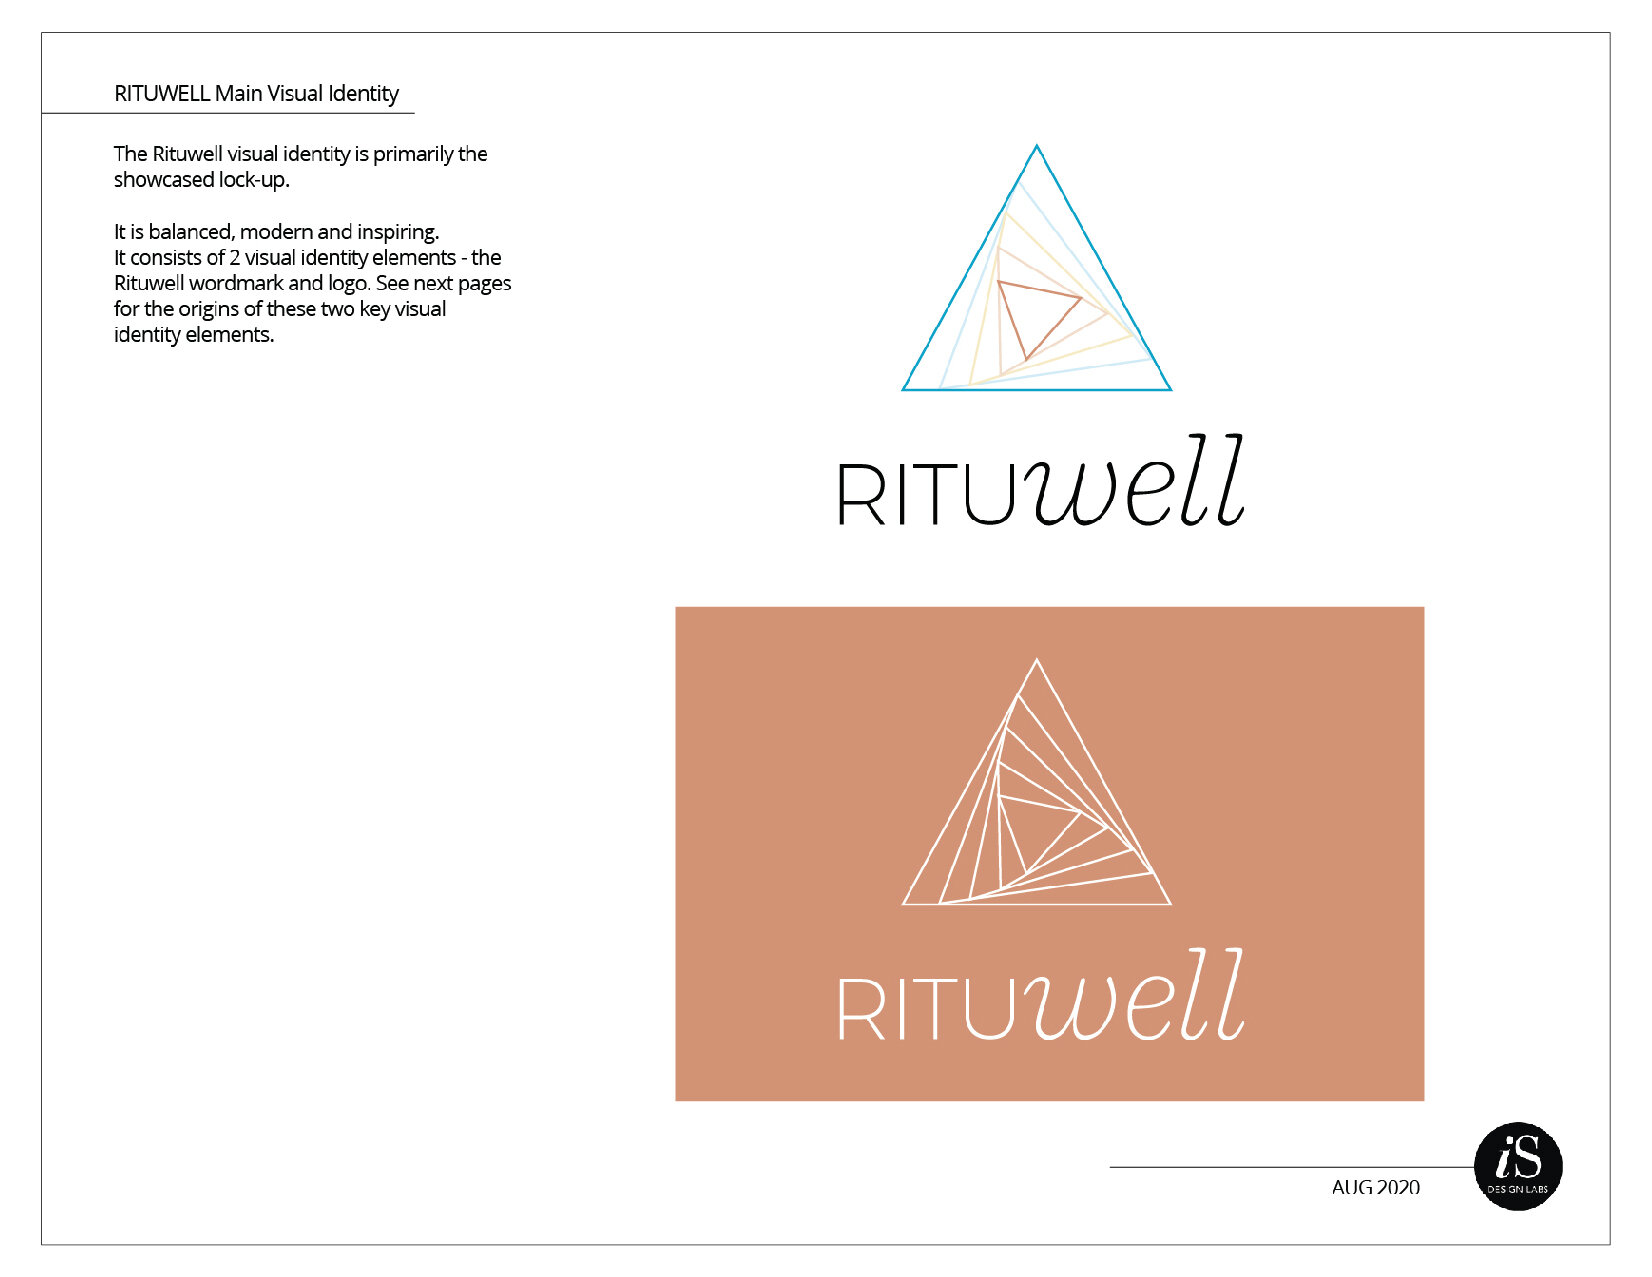 Rituwell BrandStandards wframe-08.jpg